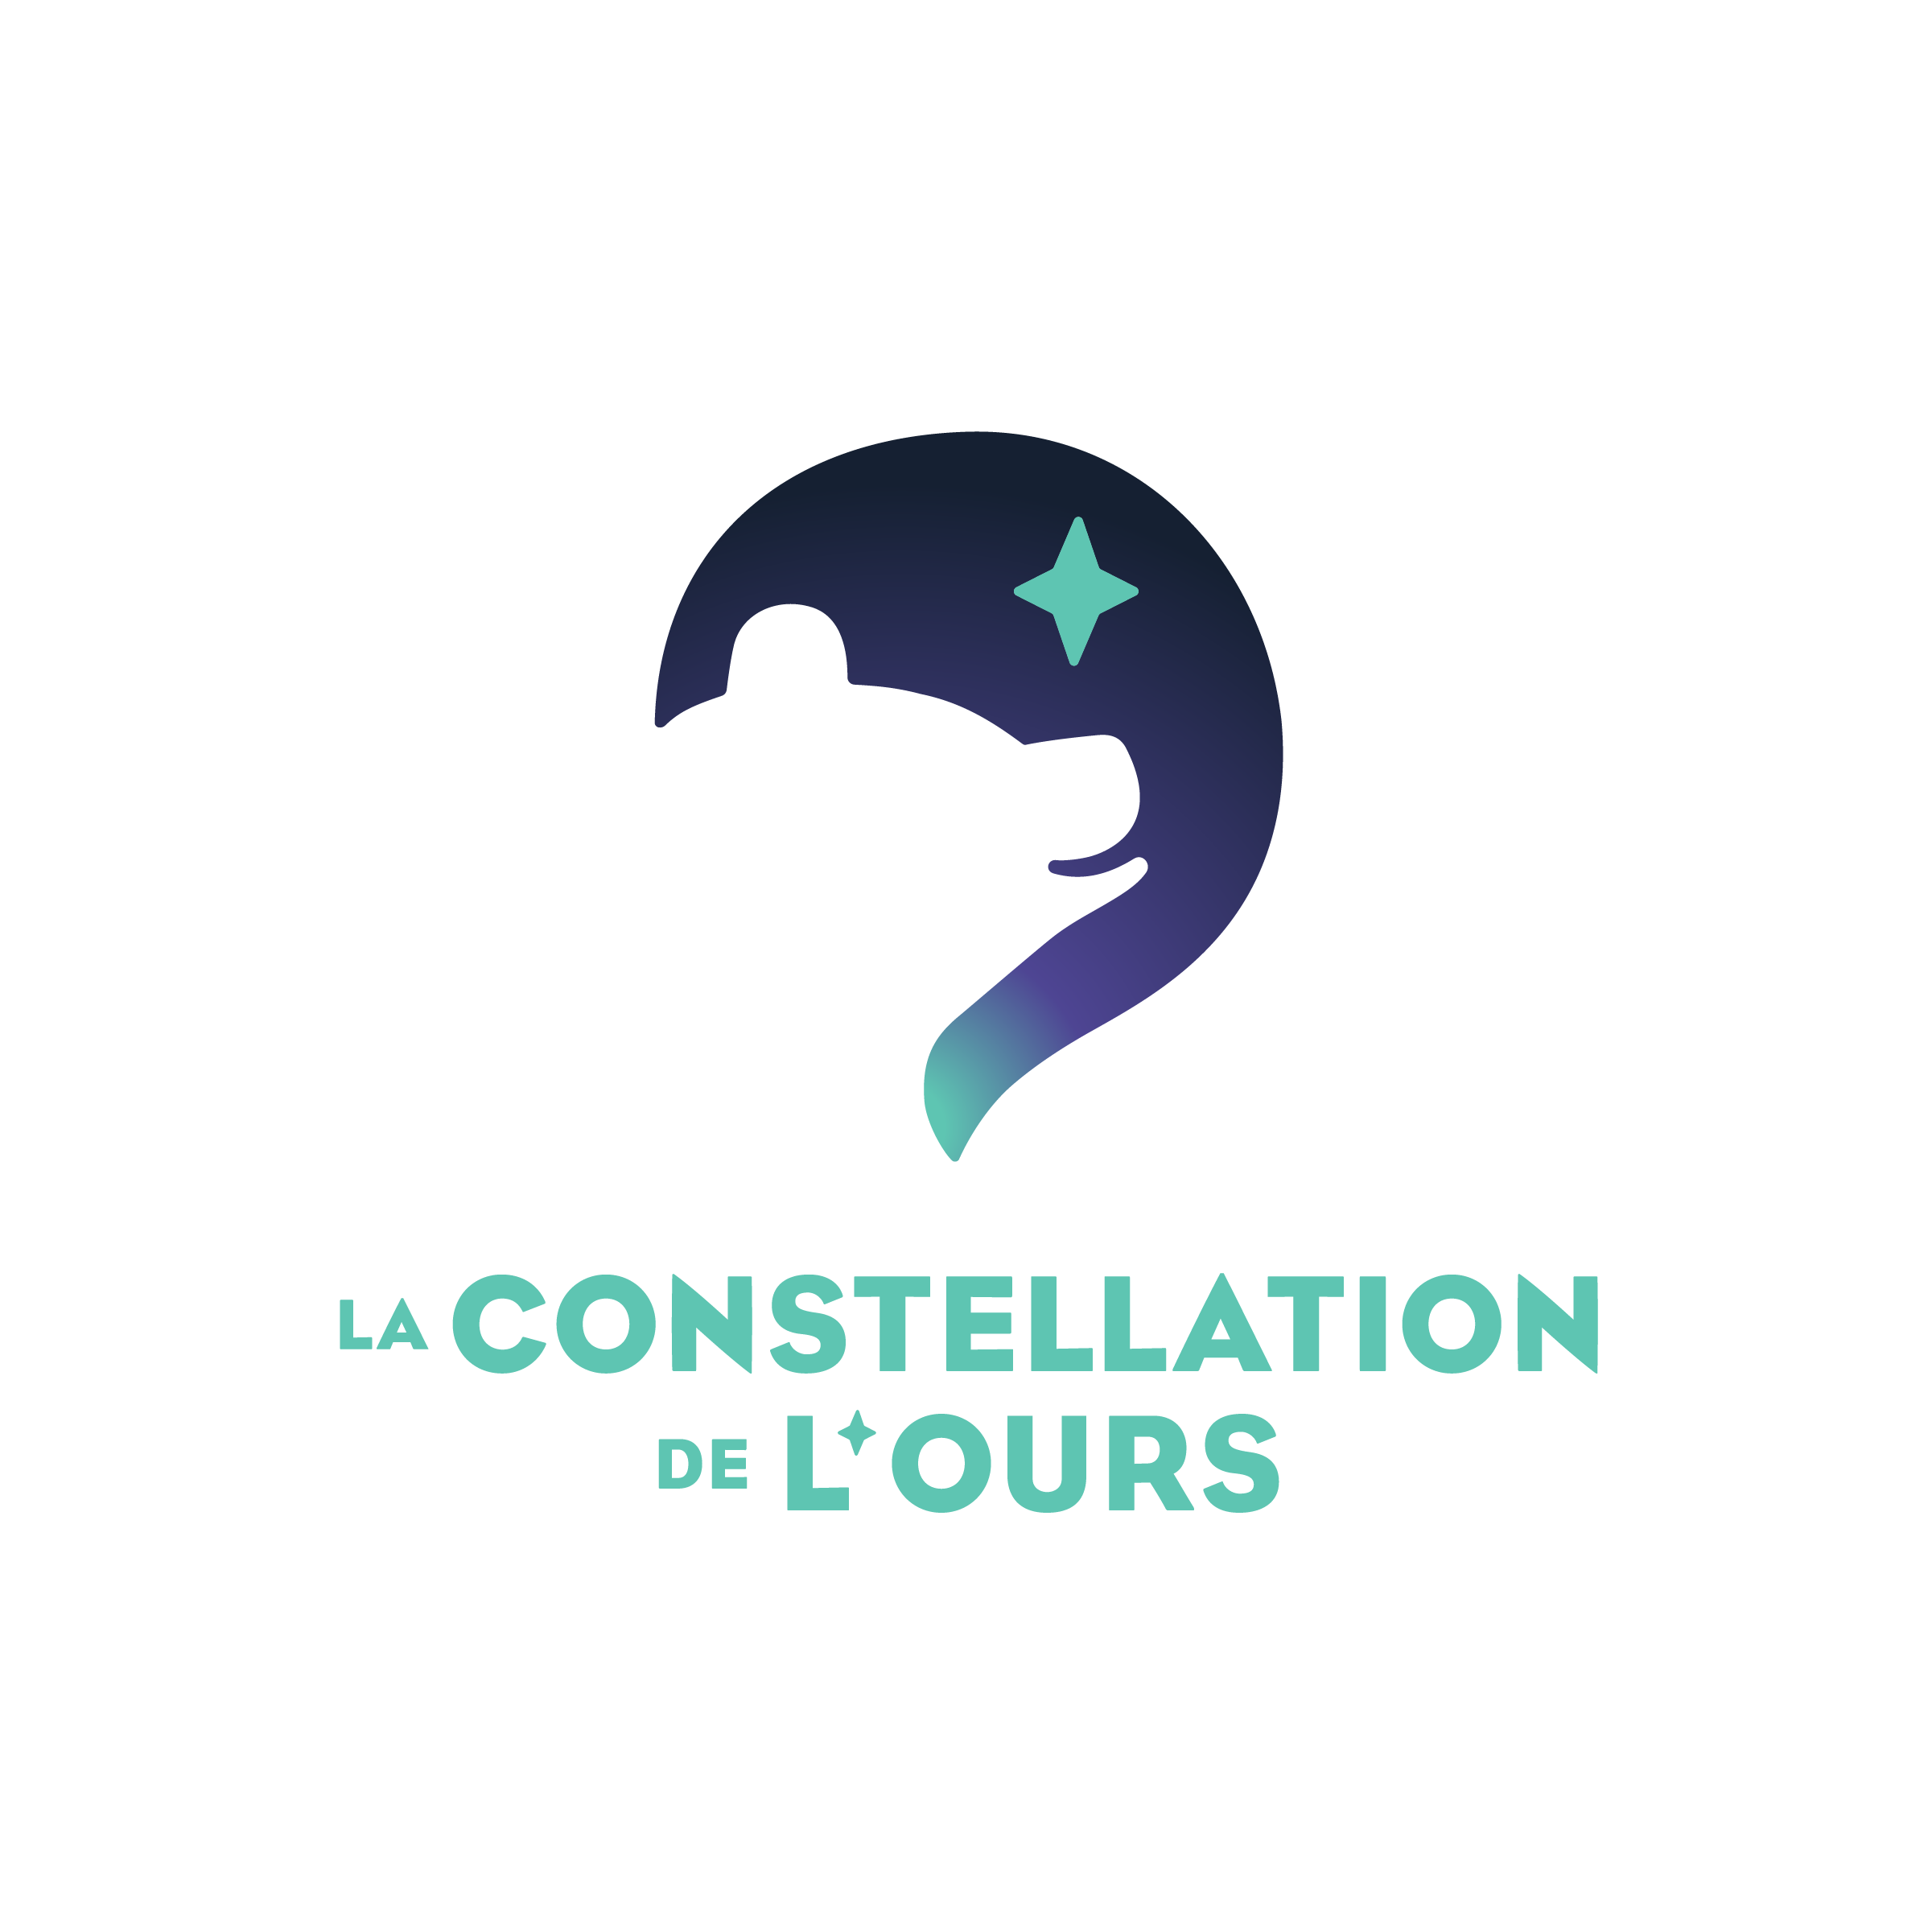 La Constellation de l'Ours